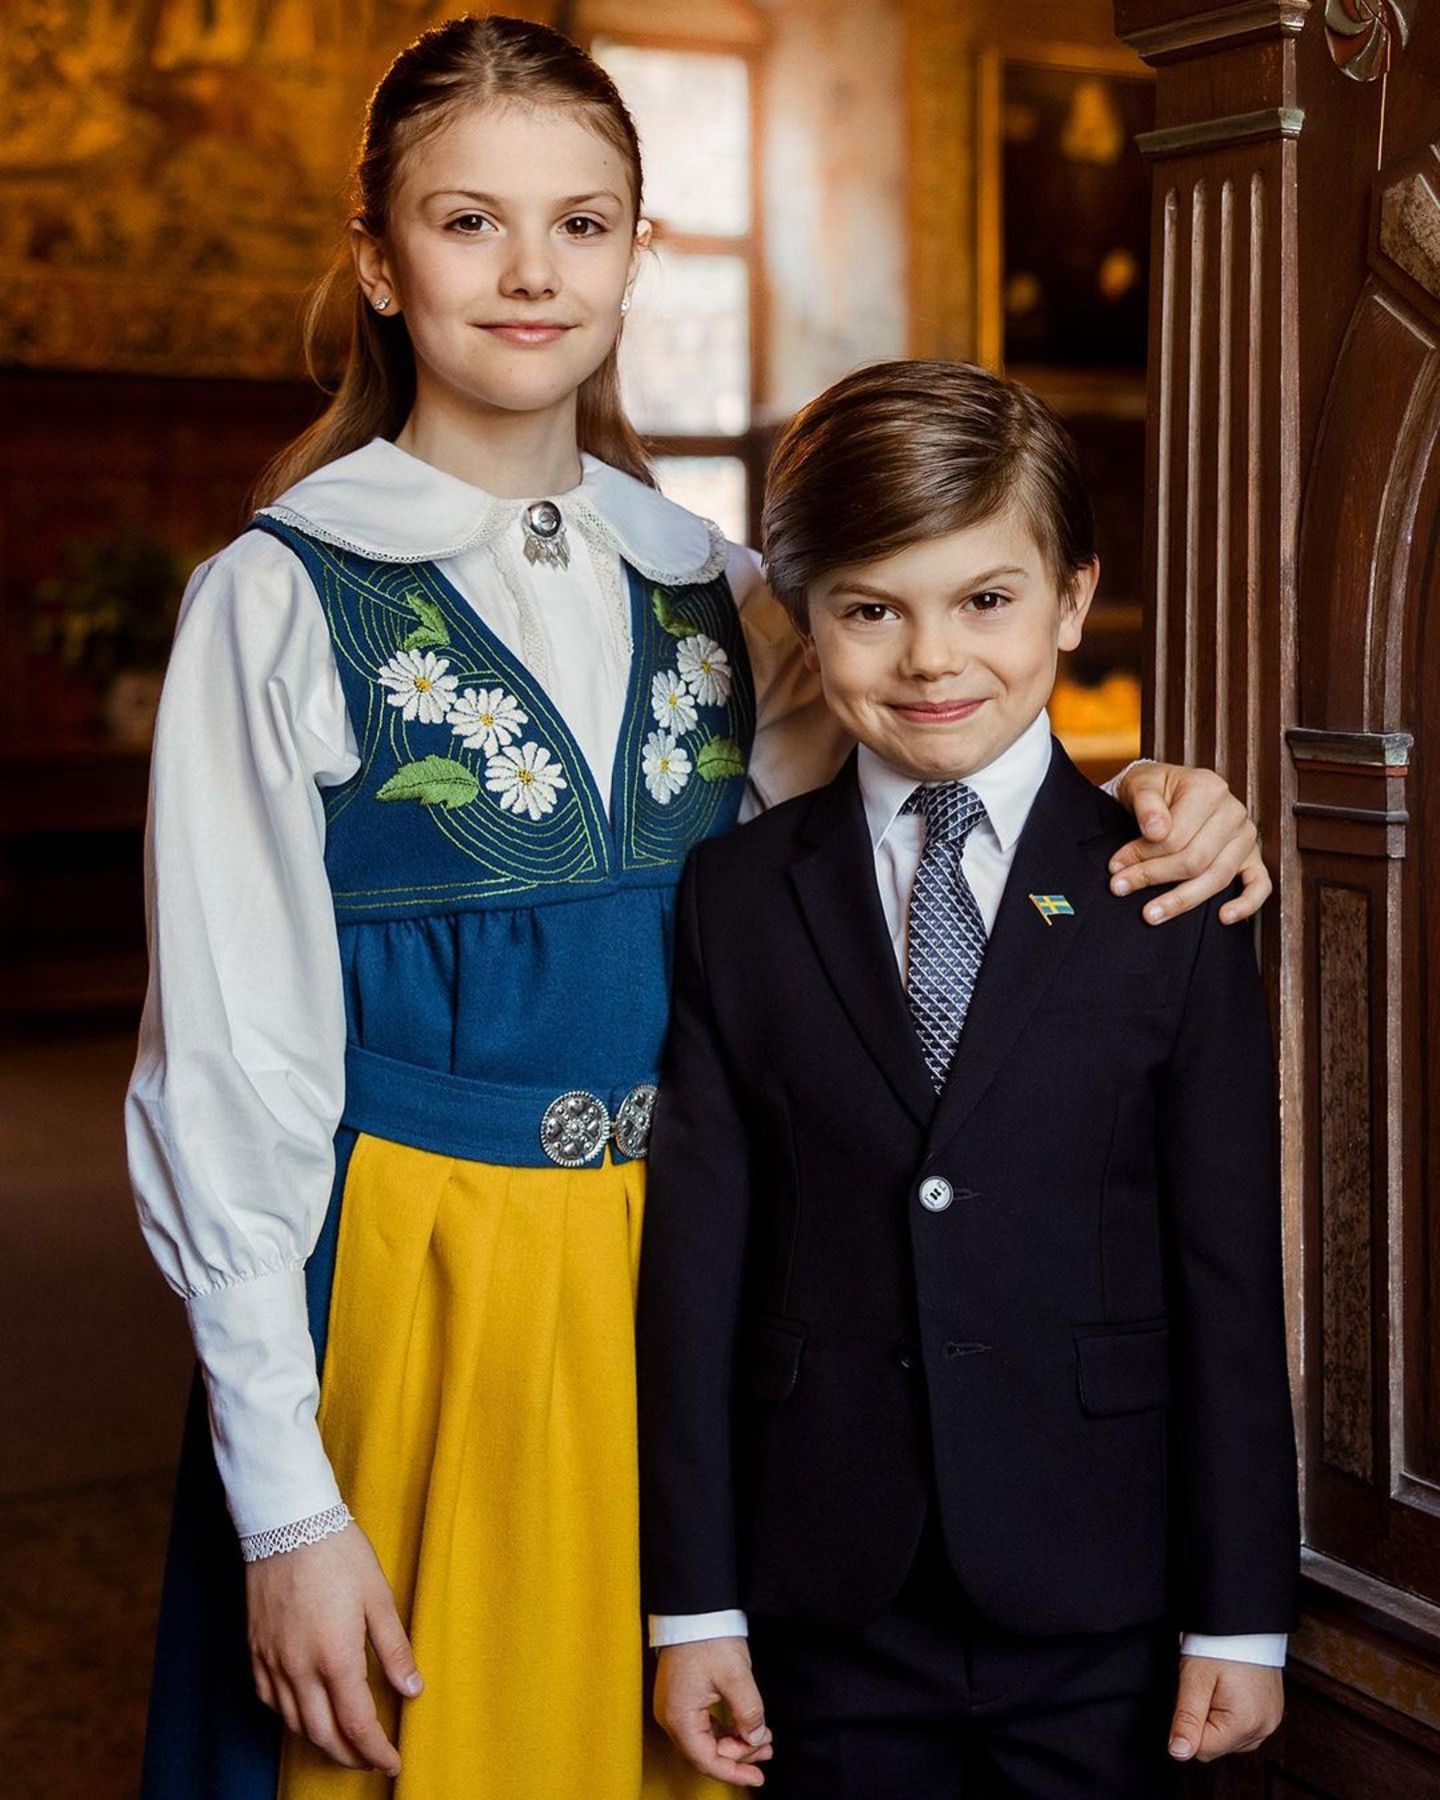 Ein zweites Foto zeigt Prinzessin Estelle und Prinz Oscar in trauter Zweisamkeit. Vor allem der kleine Oscar scheint sich schon sehr auf den besonderen Feiertag zu freuen, wie sein schelmisches Grinsen vermuten lässt.